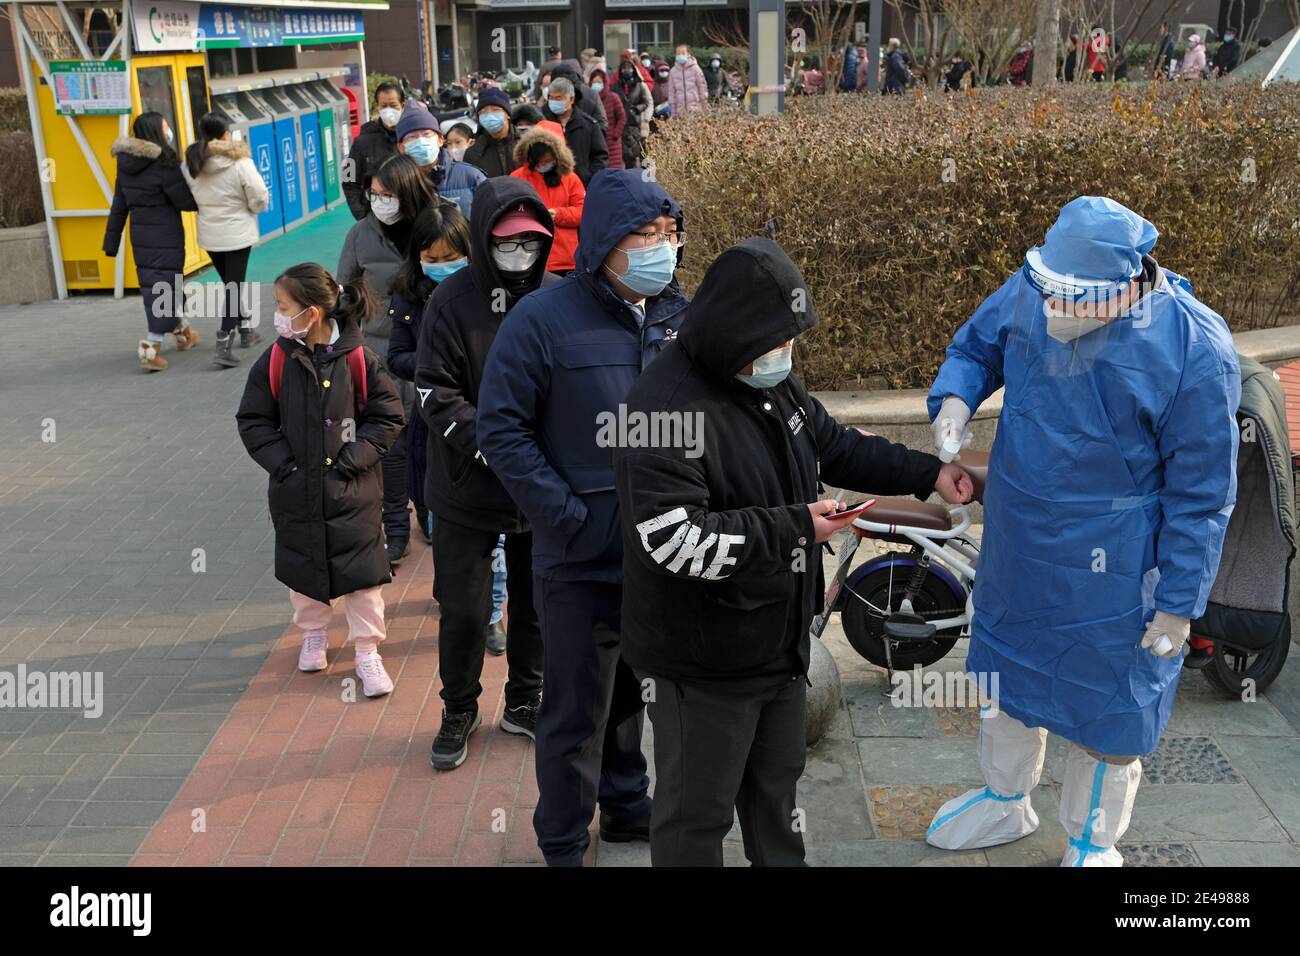 Les gens font la queue pour obtenir leur test d'acide nucléique à la suite de l'épidémie de coronavirus (COVID-19) à Beijing, Chine le 22 janvier 2021. Banque D'Images